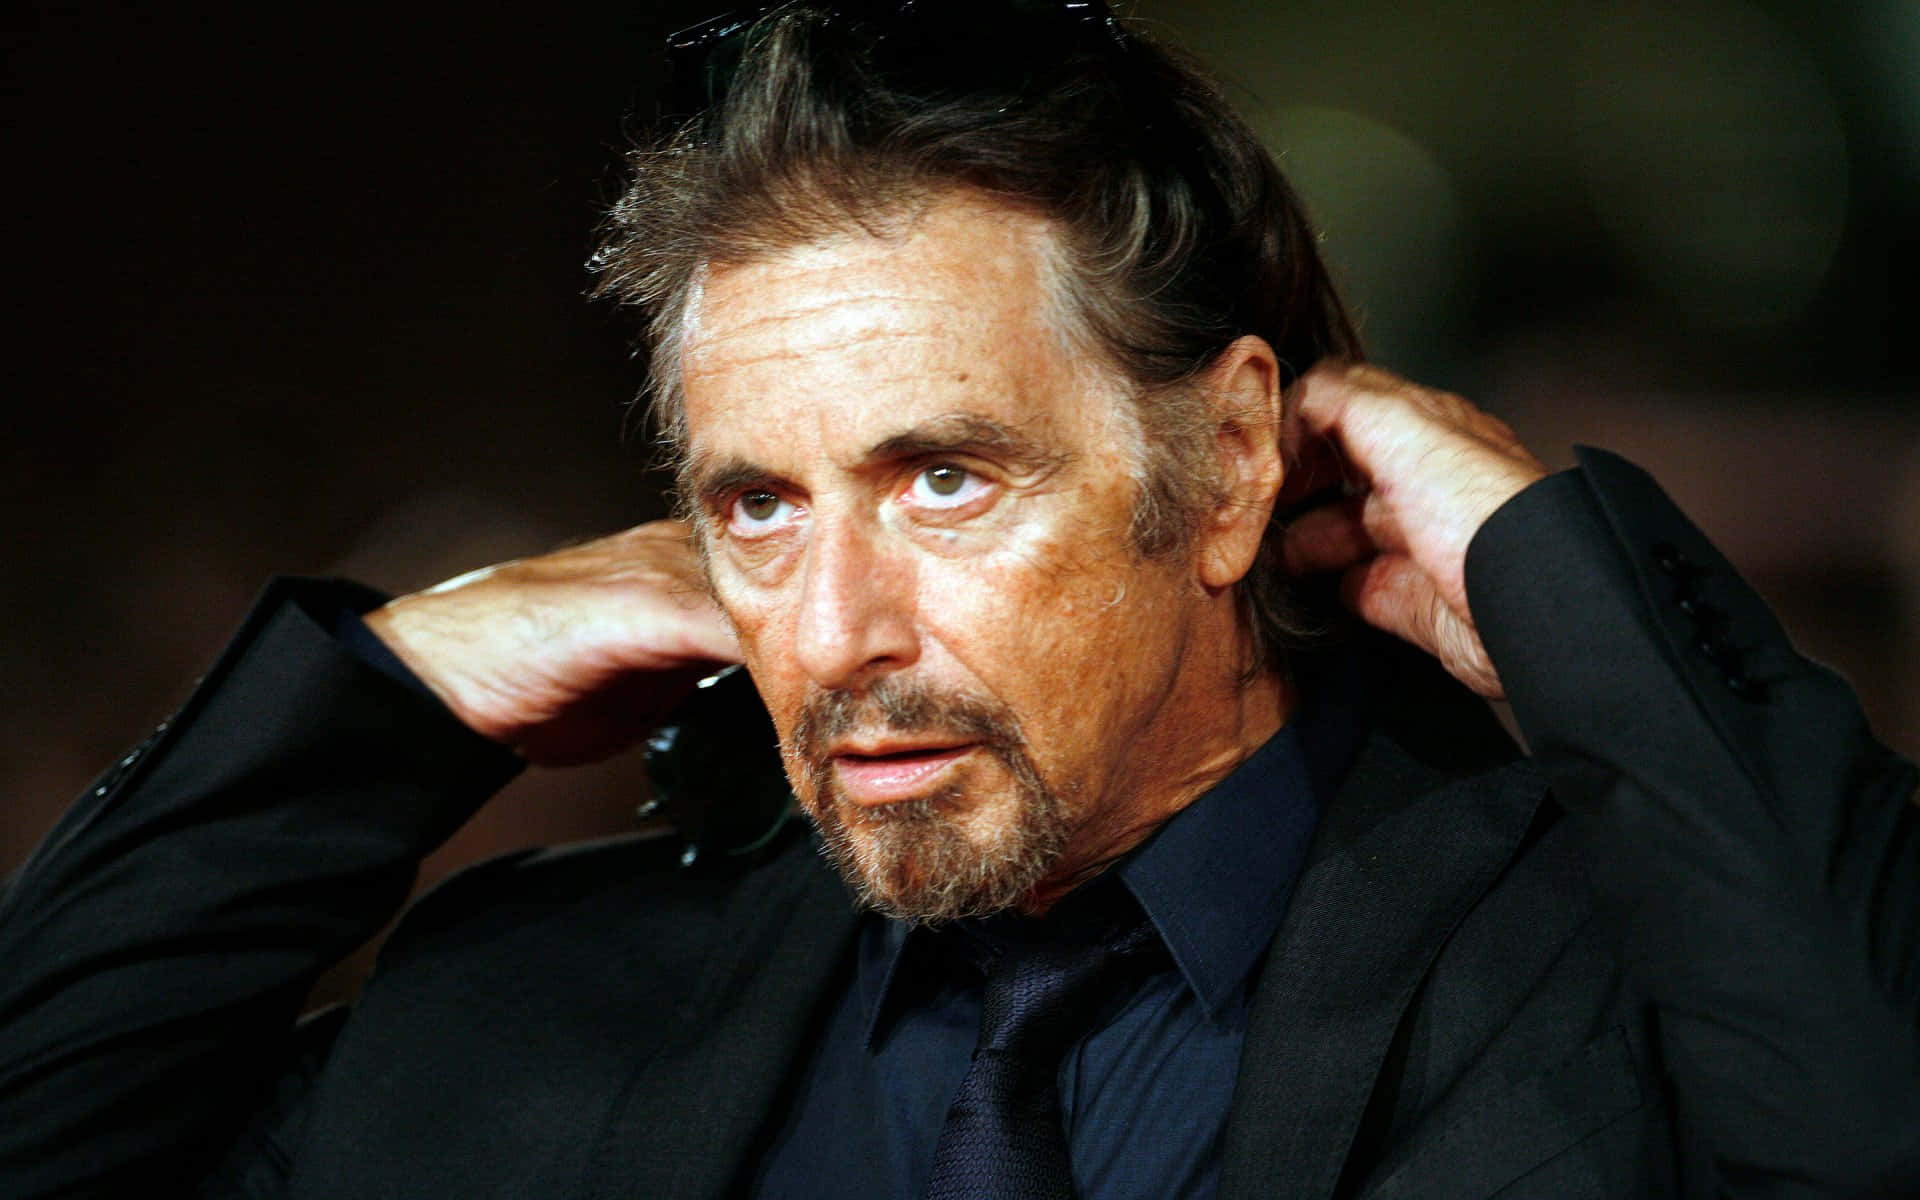 Bildpå Den Ikoniska Skådespelaren Al Pacino.